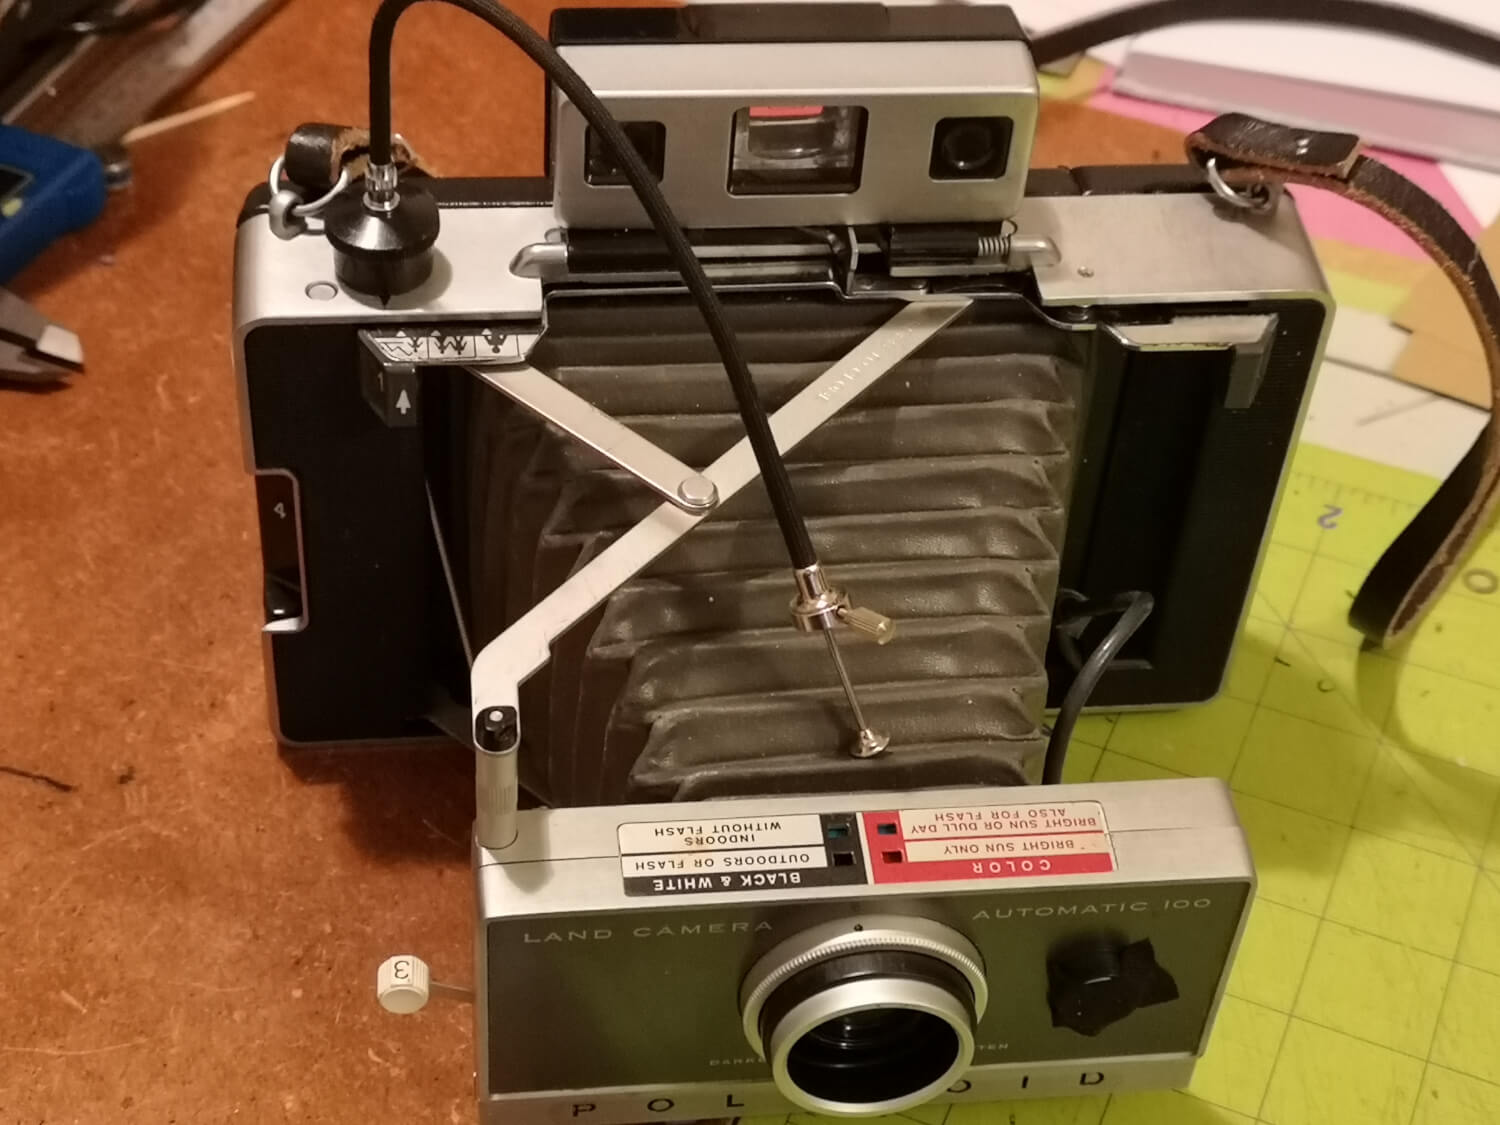 A Polaroid camera ready to shoot paper negatives